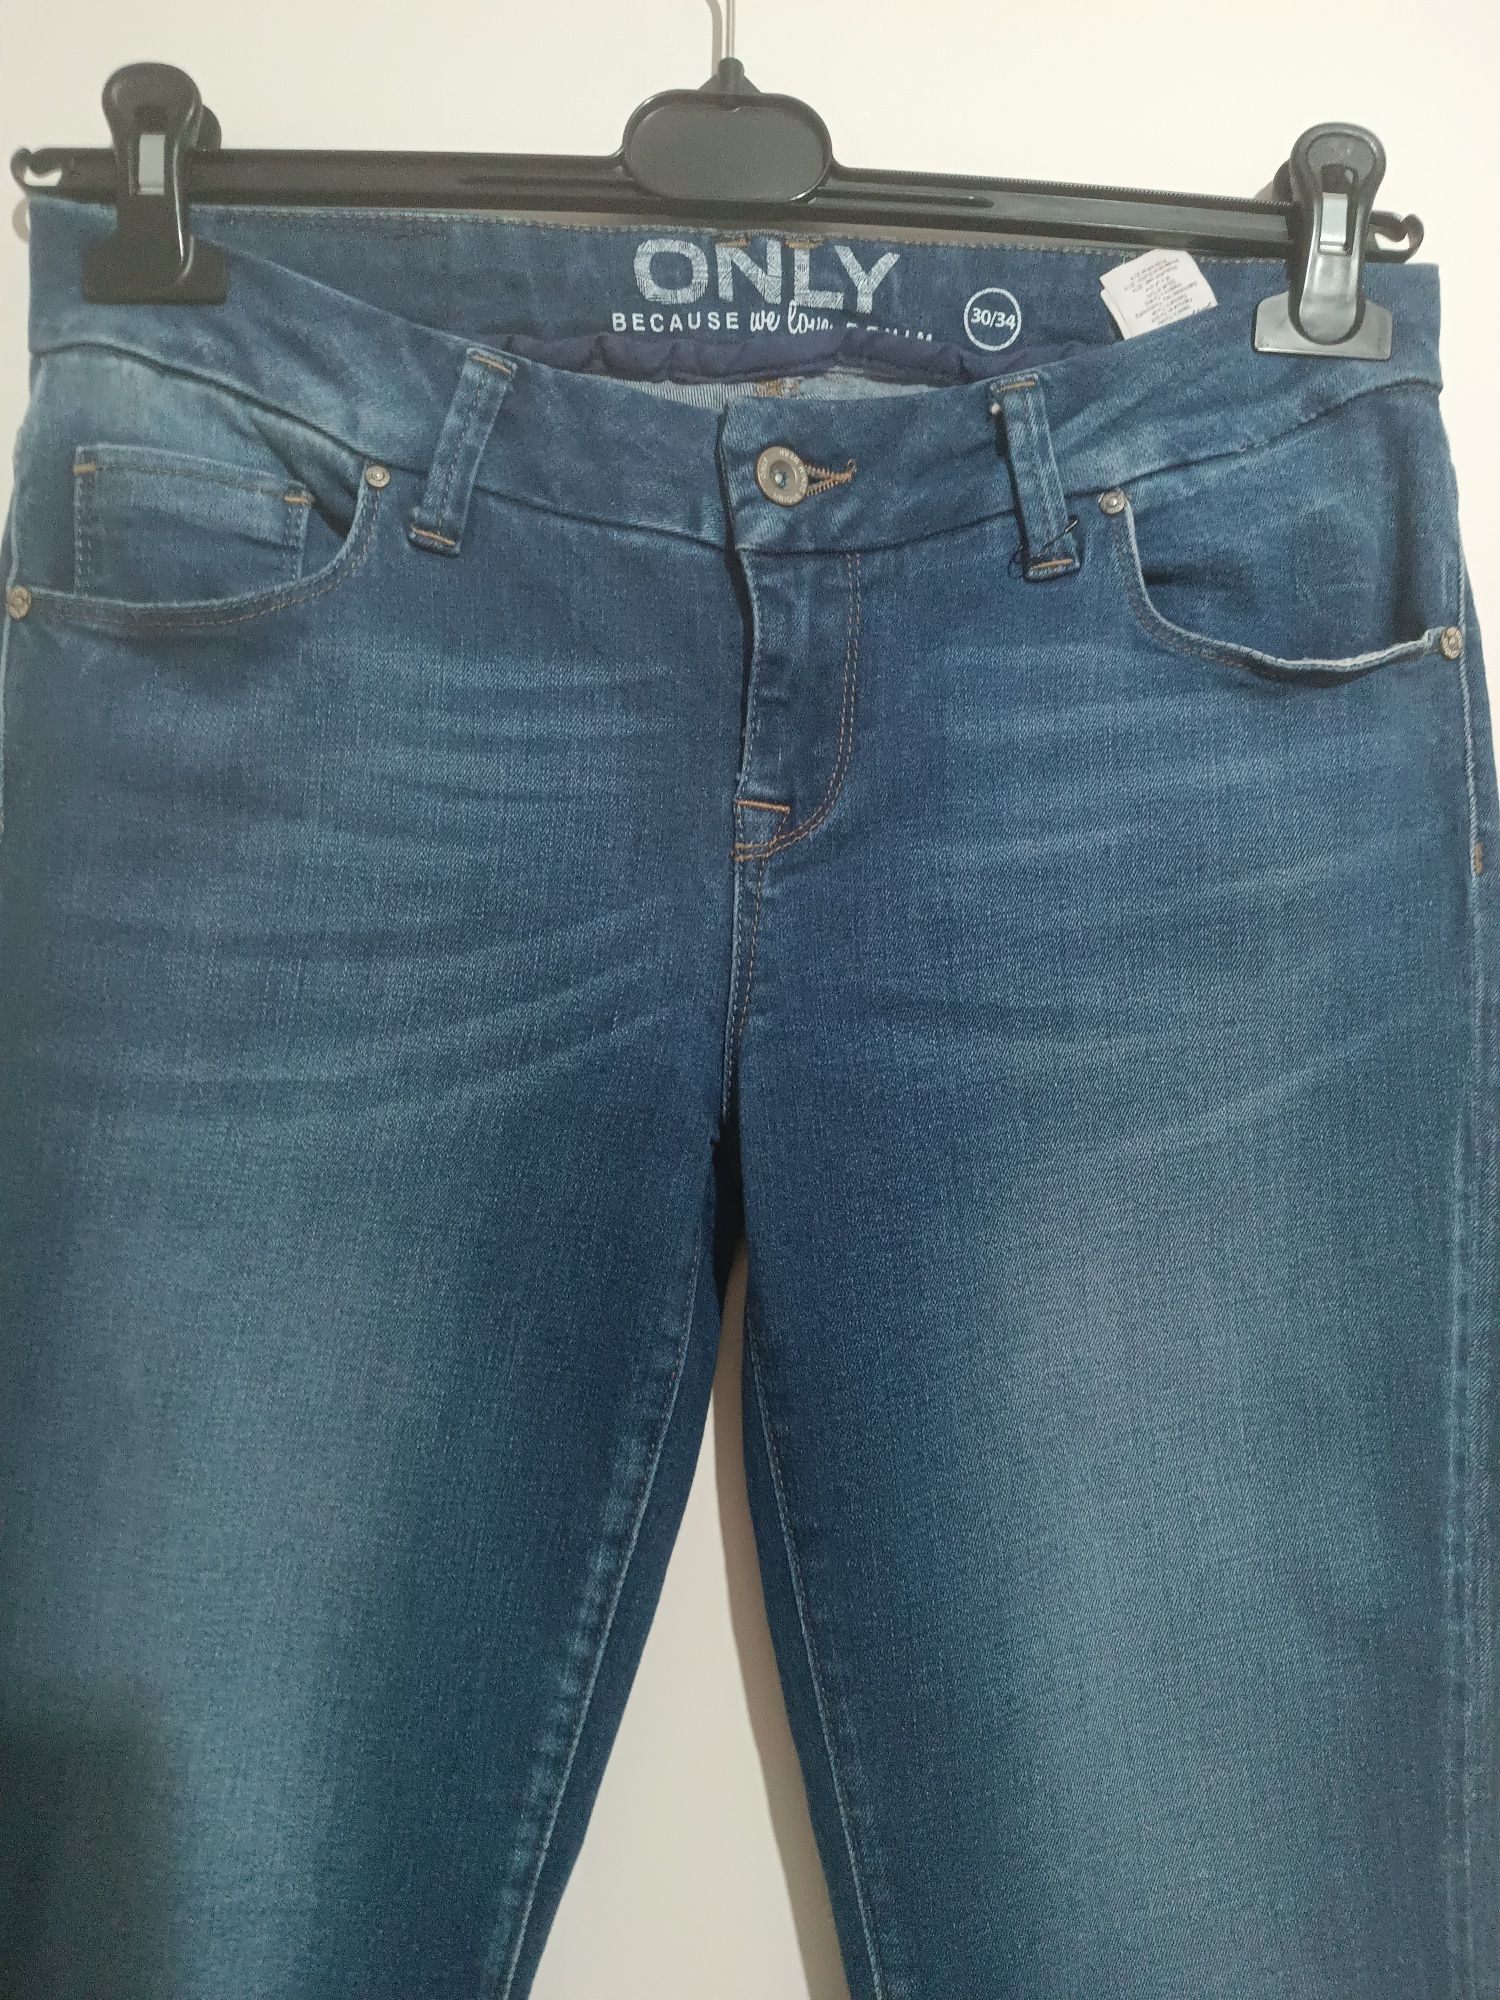 Damskie jeansy firmy ONLY nowe rozmiar 30/34 Long